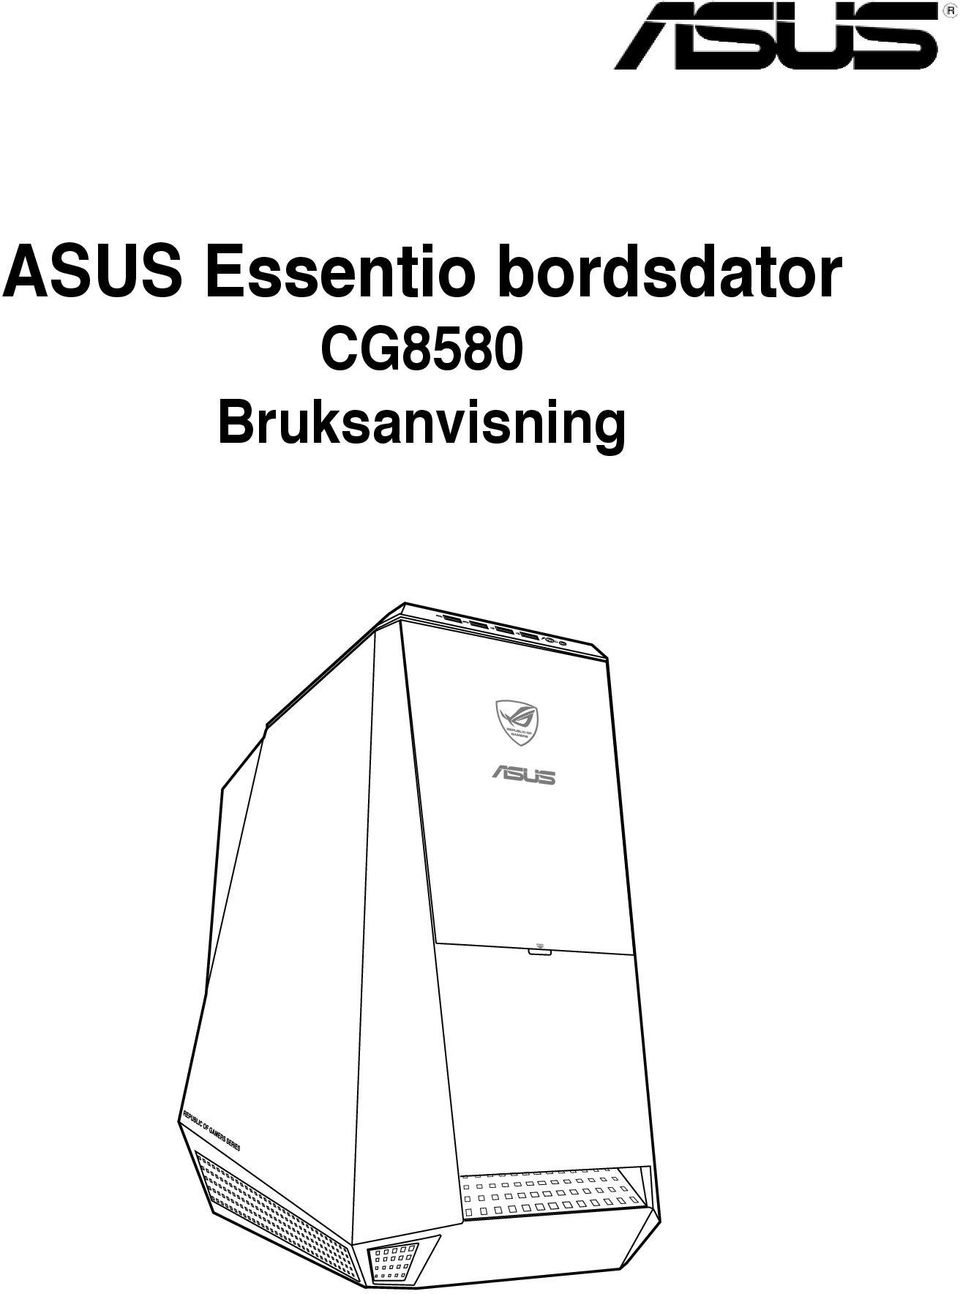 ASUS Essentio bordsdator CG8580 Bruksanvisning - PDF Gratis ...